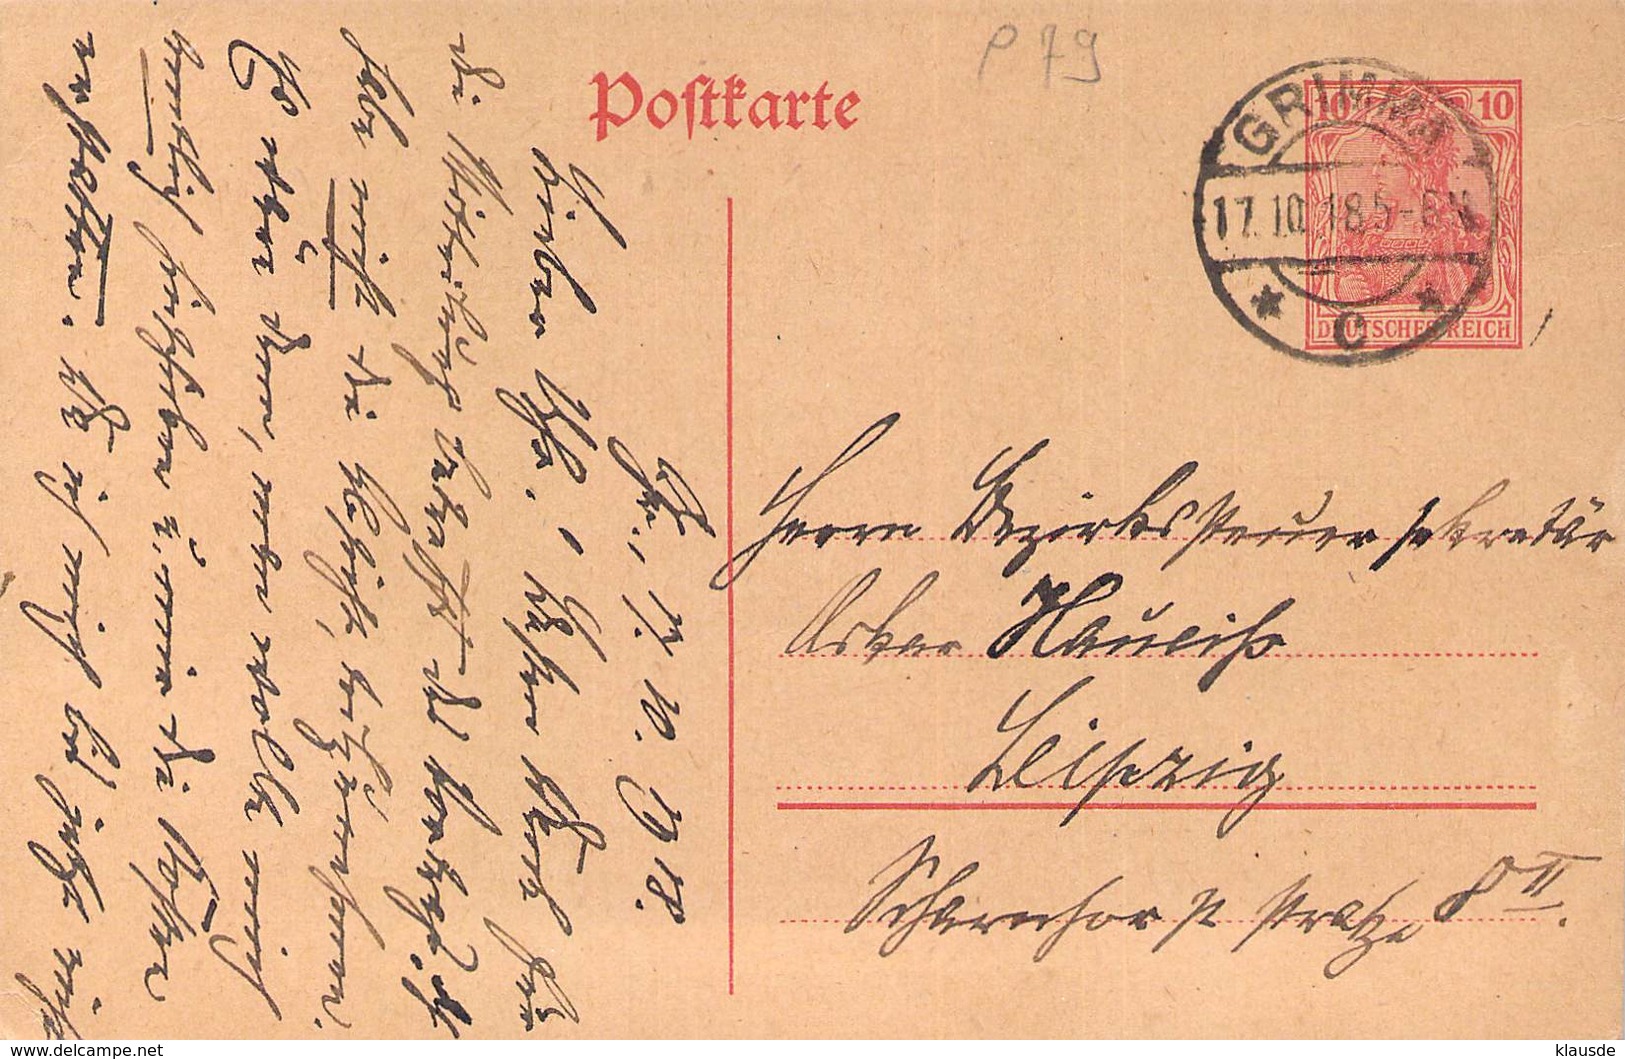 P79 Deutsches Reich 1918 - Postcards